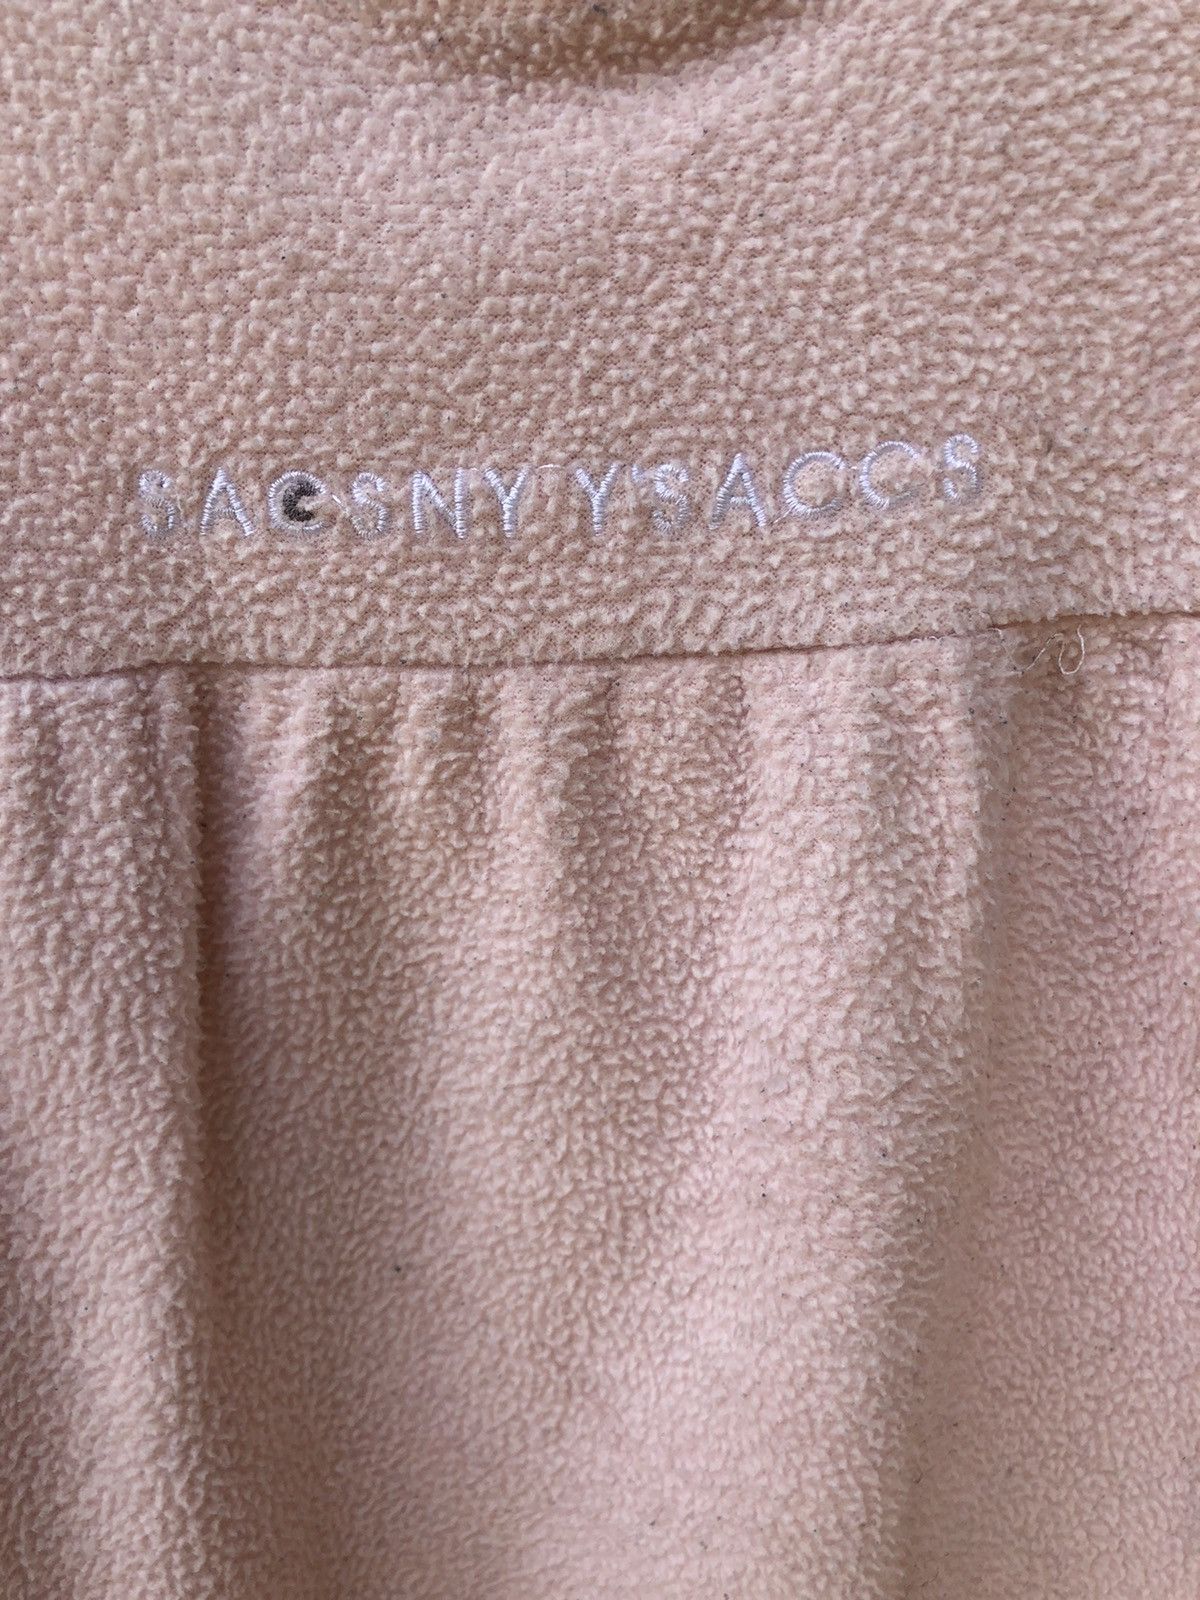 💣Offer Sacsny by yohji yamamoto fleece pajamas long sleeve - 3